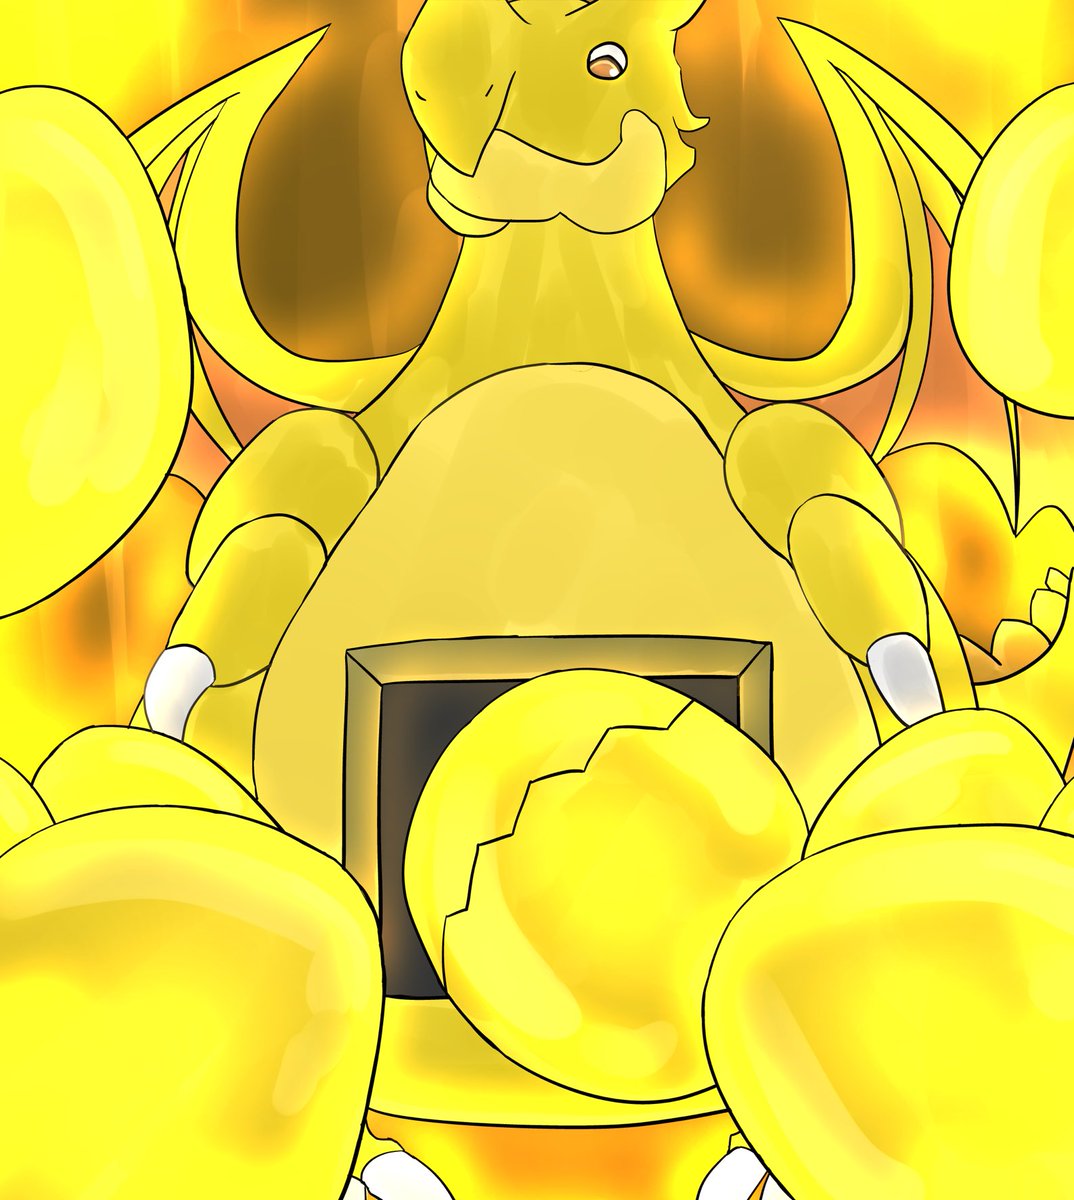 「何となく、金の卵大量放出中のガチャドラを描いてみました! #イラスト #パズドラ」|サシミン【おえかき実況者】のイラスト